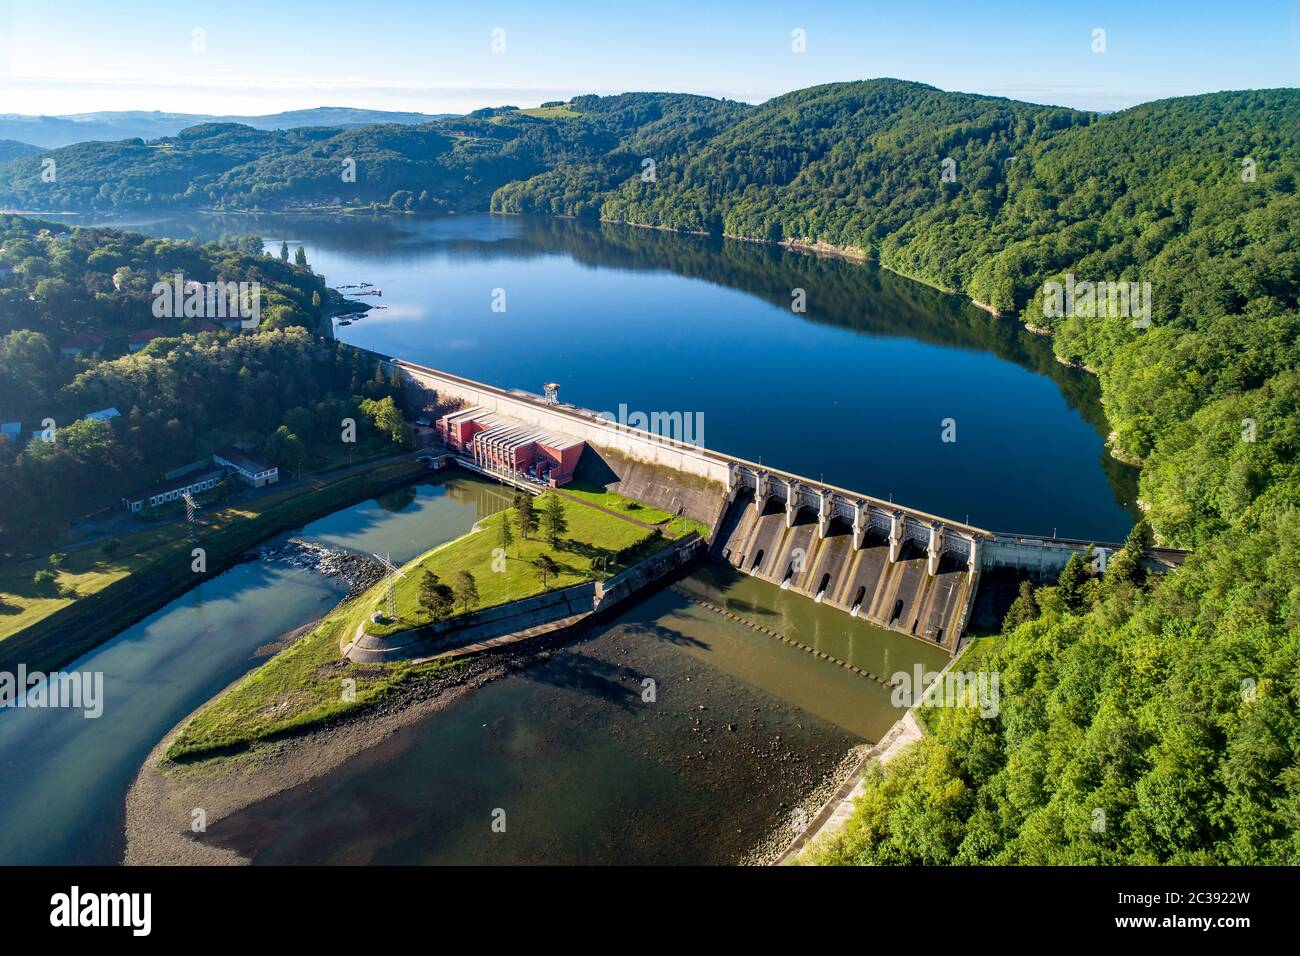 Barrage de Roznow, lac et centrale hydroélectrique sur la rivière Dunajec en Pologne. Vue aérienne. Tôt le matin au printemps Banque D'Images